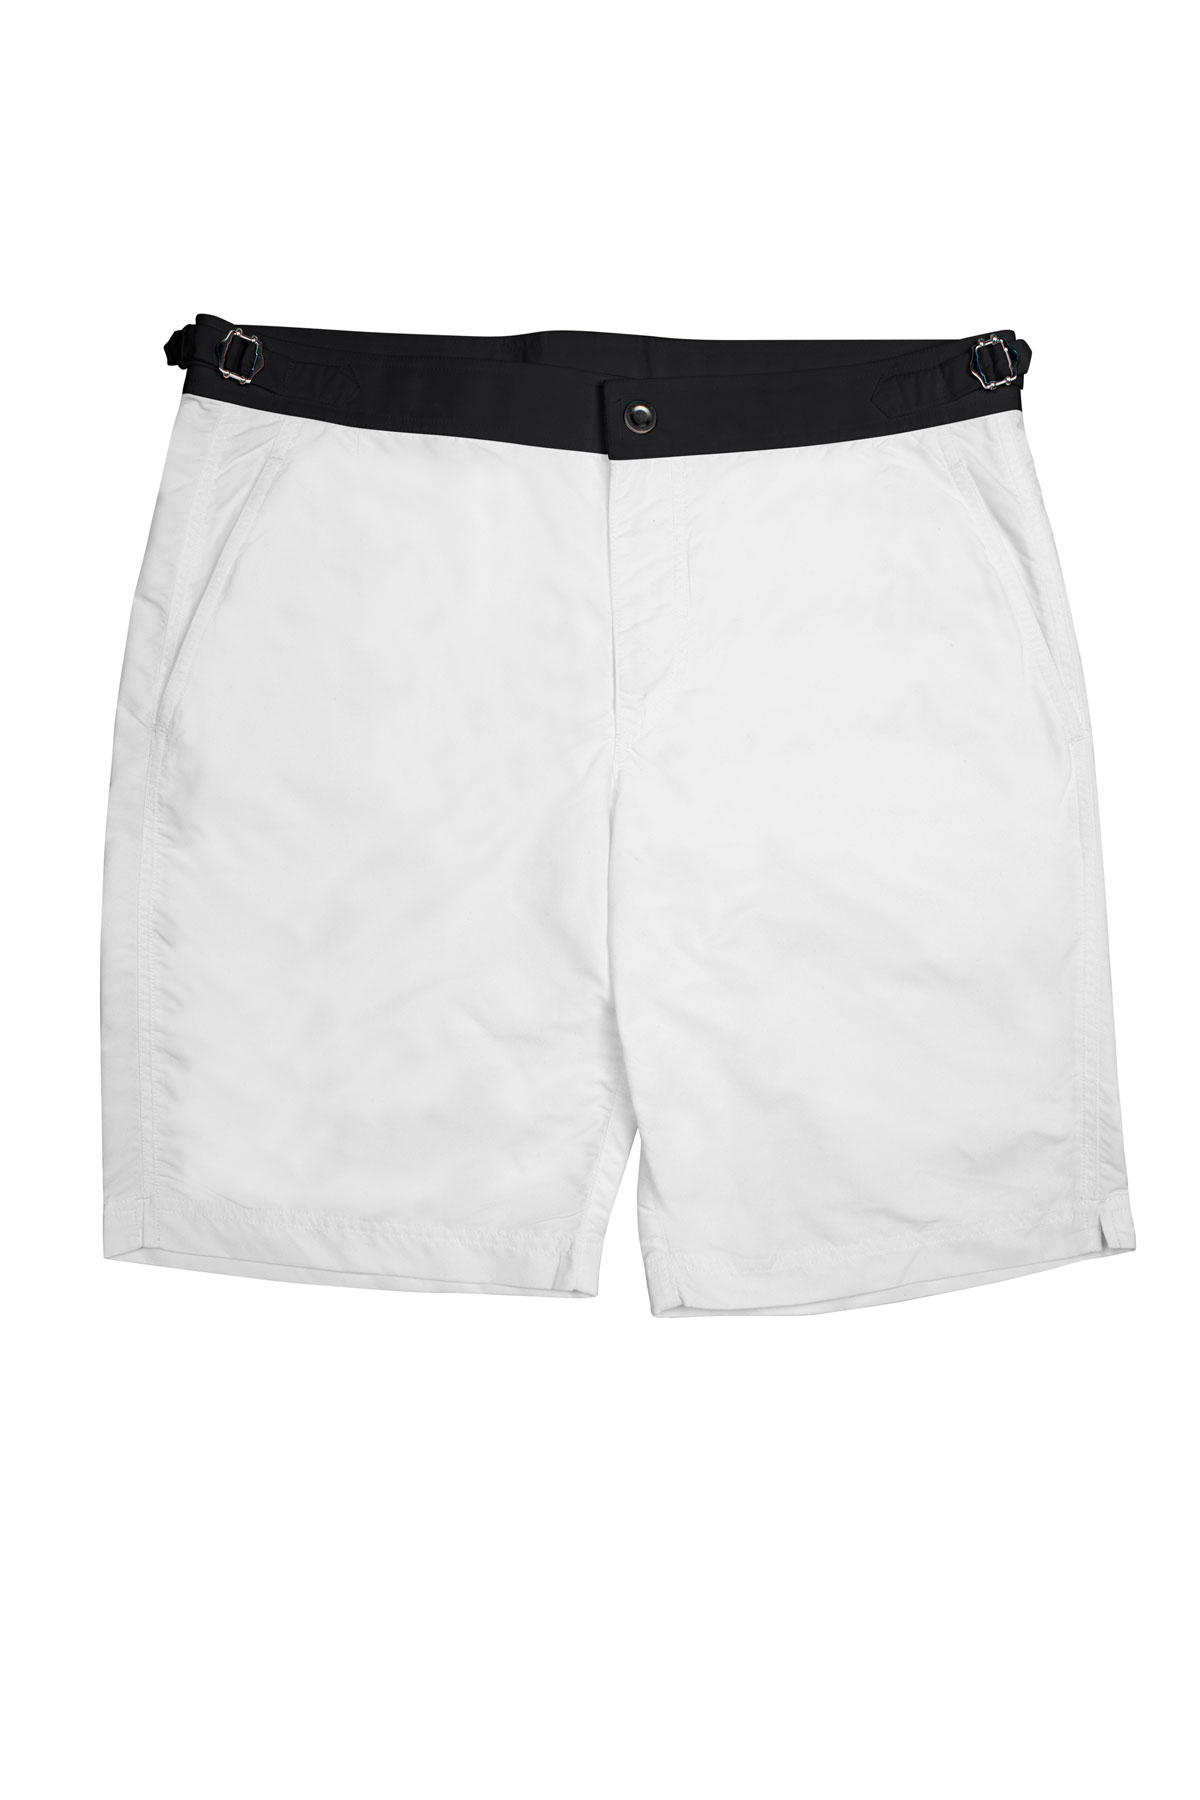 White Swim Shorts w Black Waistband